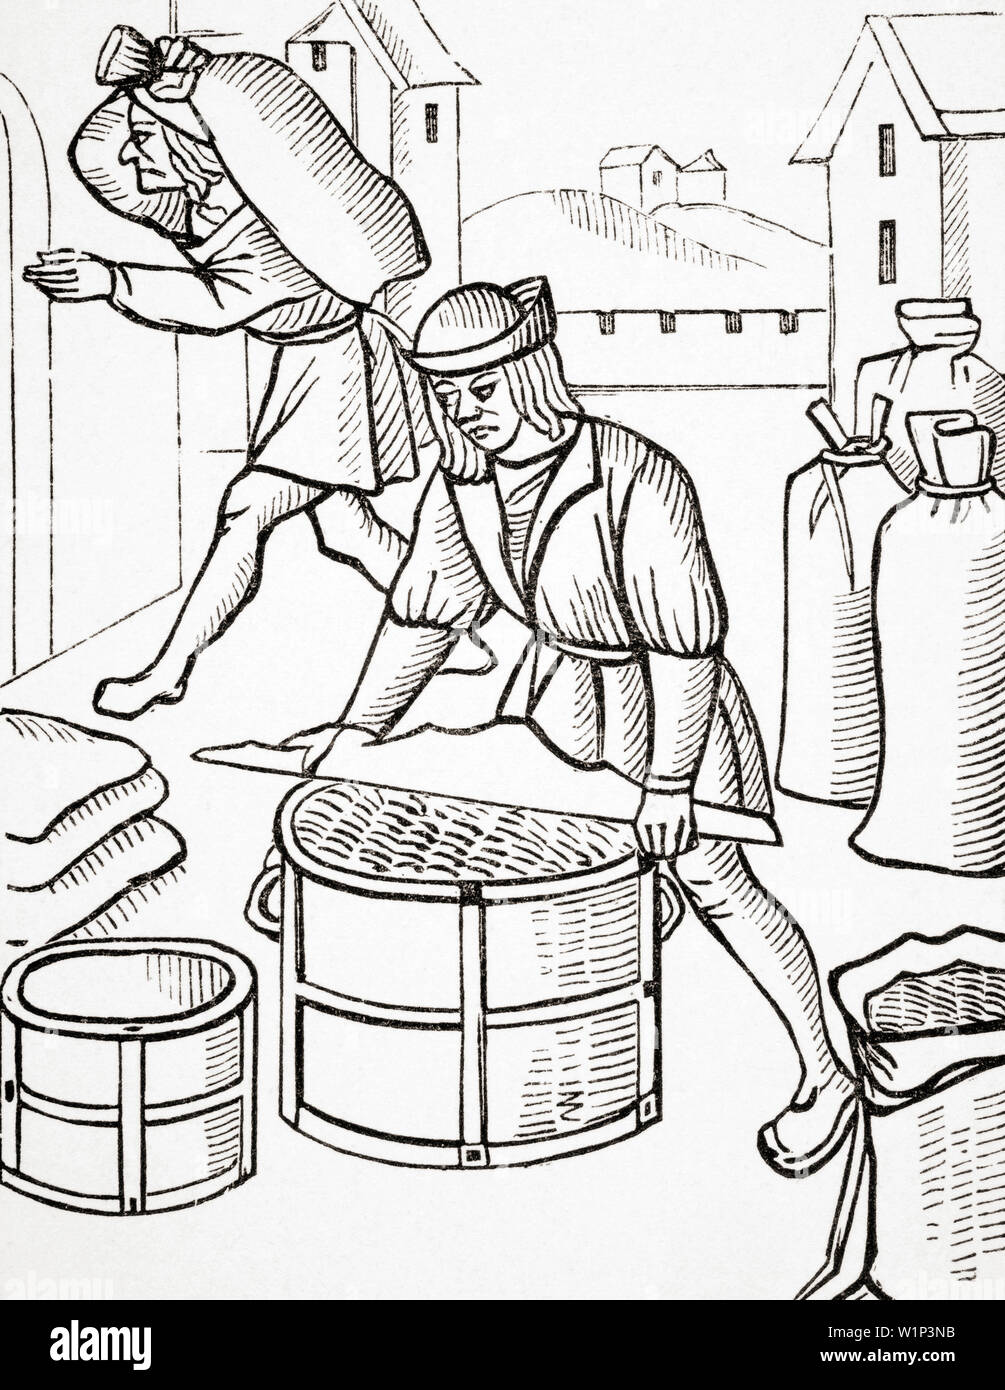 Misuratori di mais in Parigi. Dopo una xilografia dal Royal ordini riguardanti la giurisdizione della compagnia di mercanti e Shrievalty nella città di Parigi, pubblicato 1528. Foto Stock